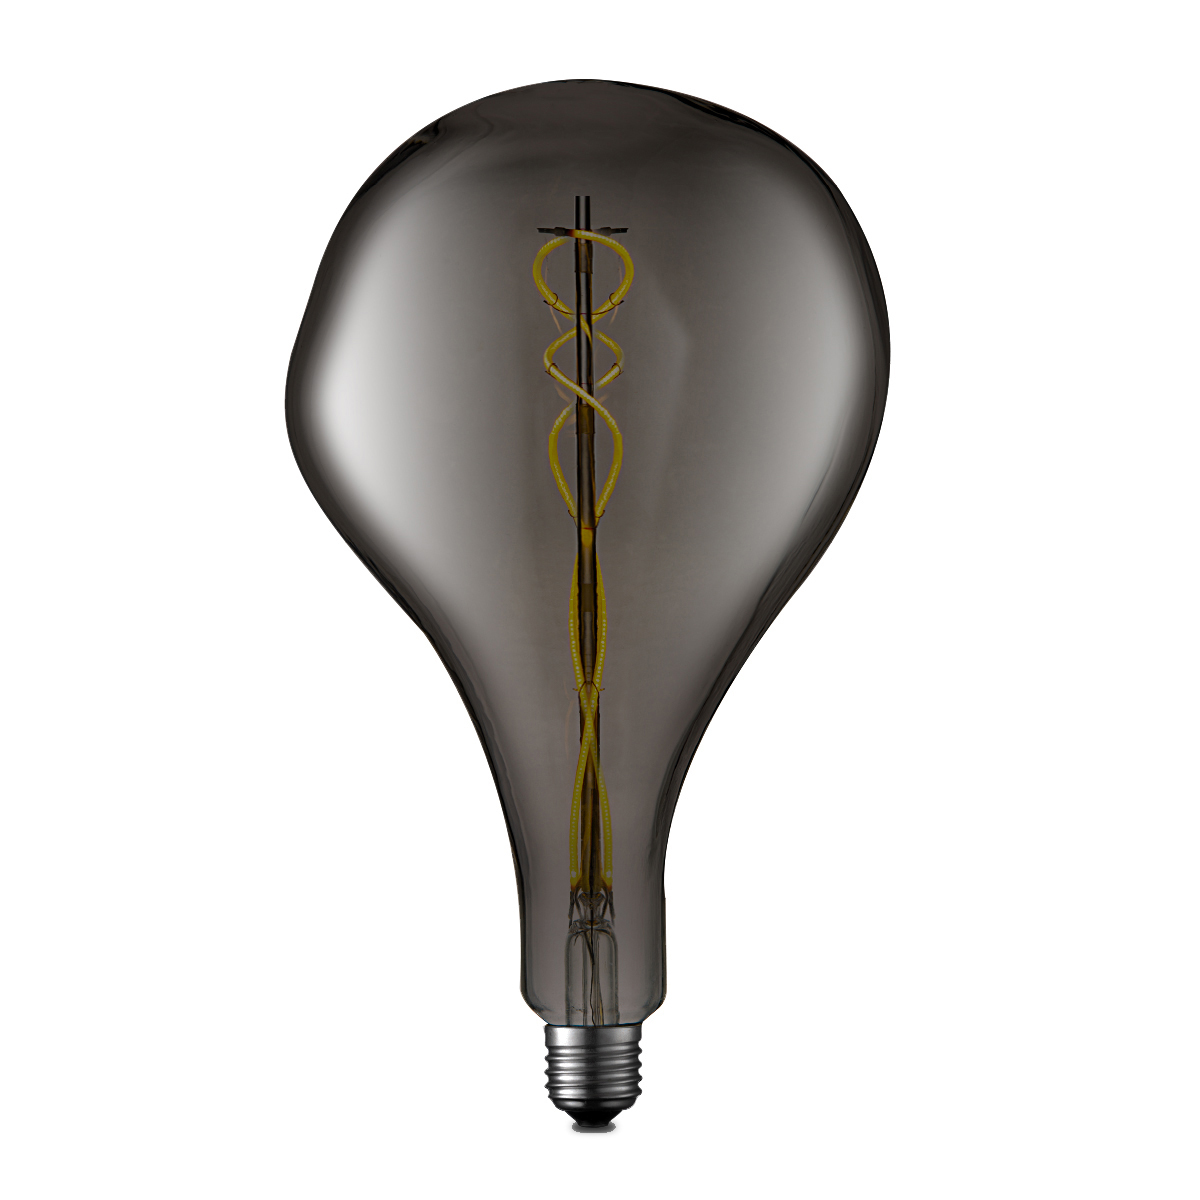 Tangla lighting - TLB-8044-03TM - LED Light Bulb Single Flex filament - special 3W titanium - bubbles - dimmable - E27